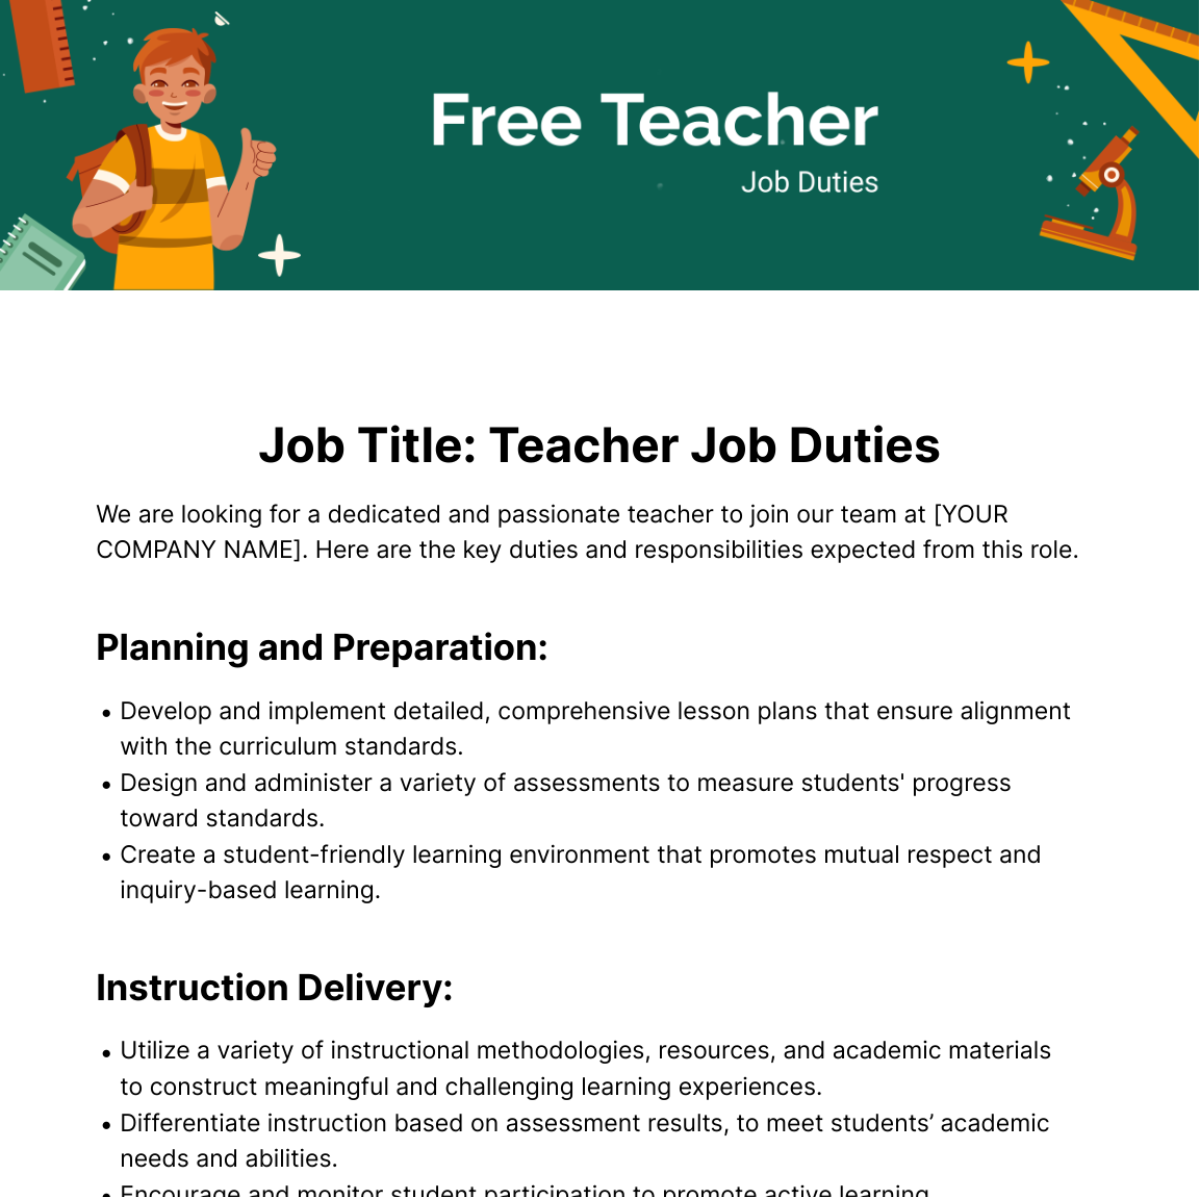 Free Teacher Job Duties Template